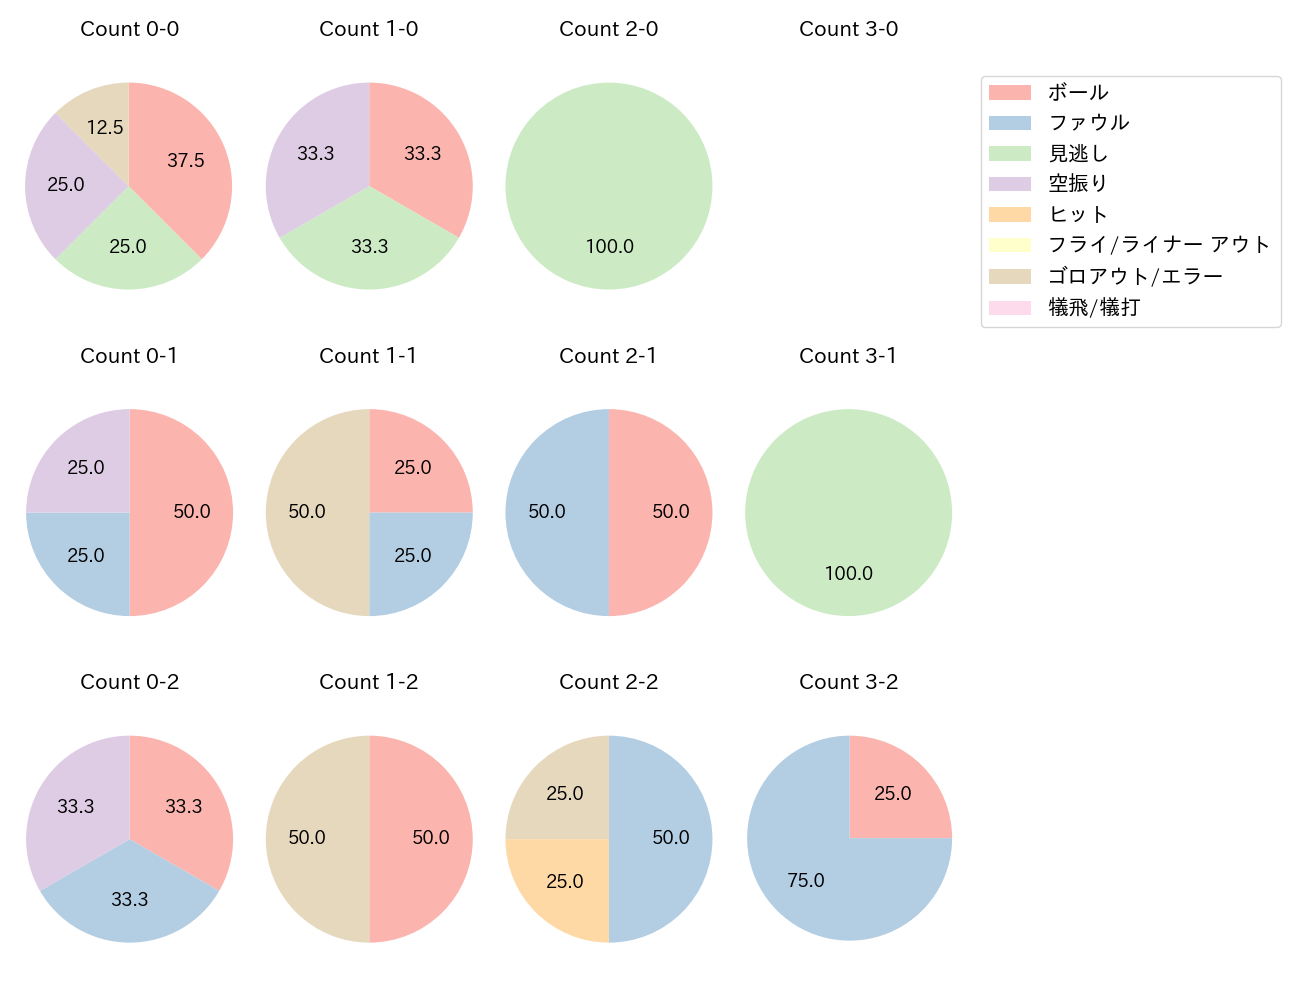 髙濱 卓也の球数分布(2021年6月)